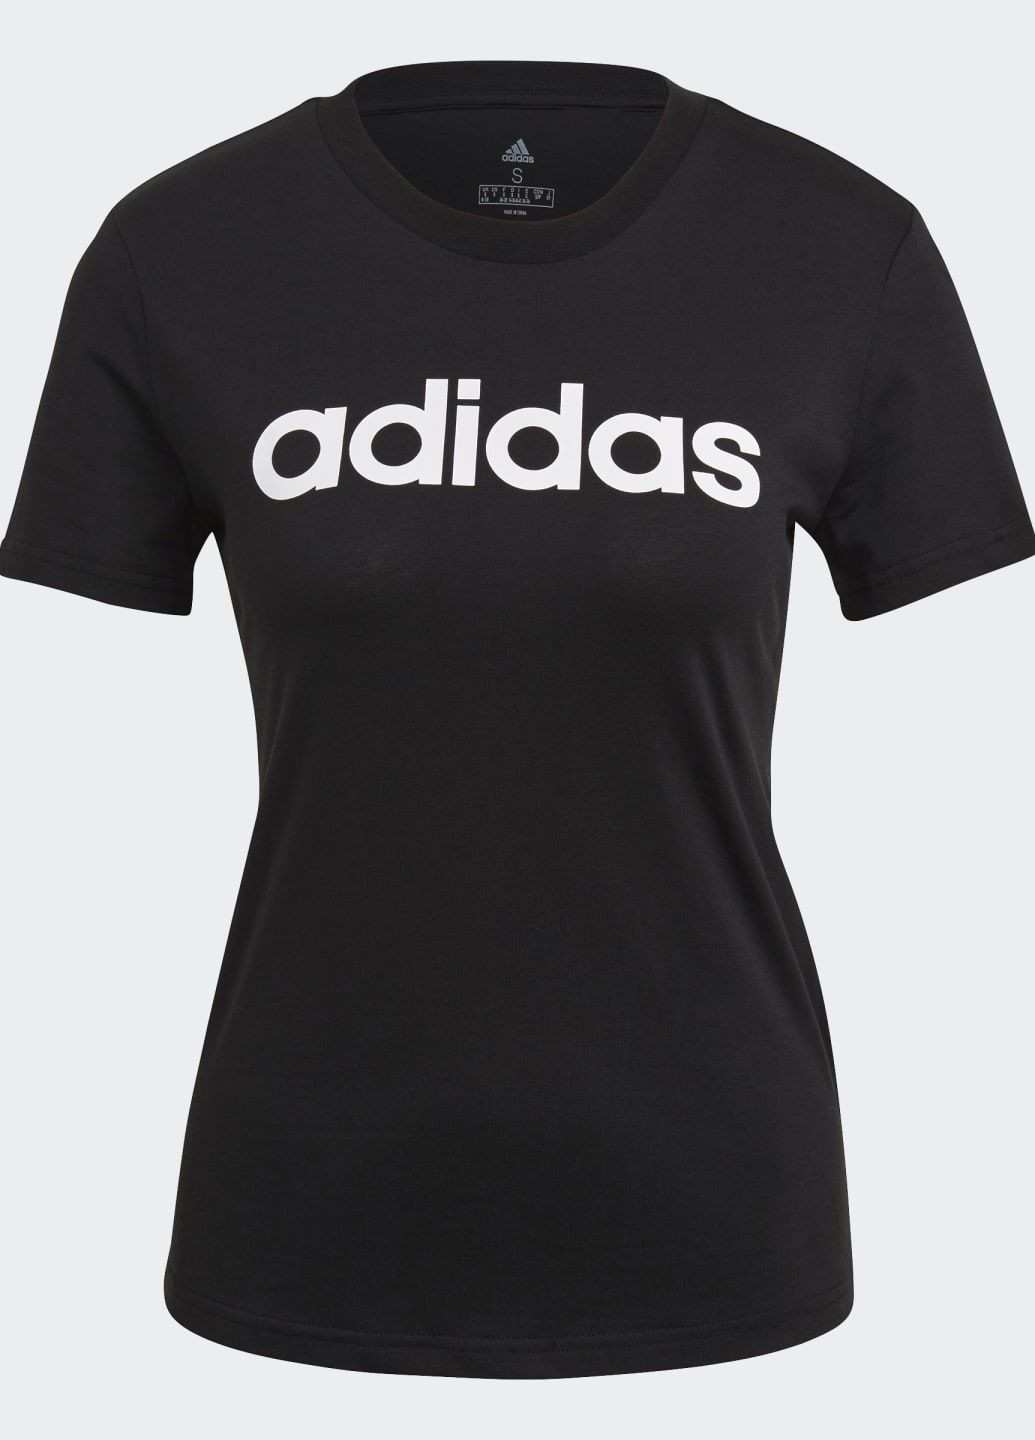 Черная всесезон футболка essentials logo slim adidas